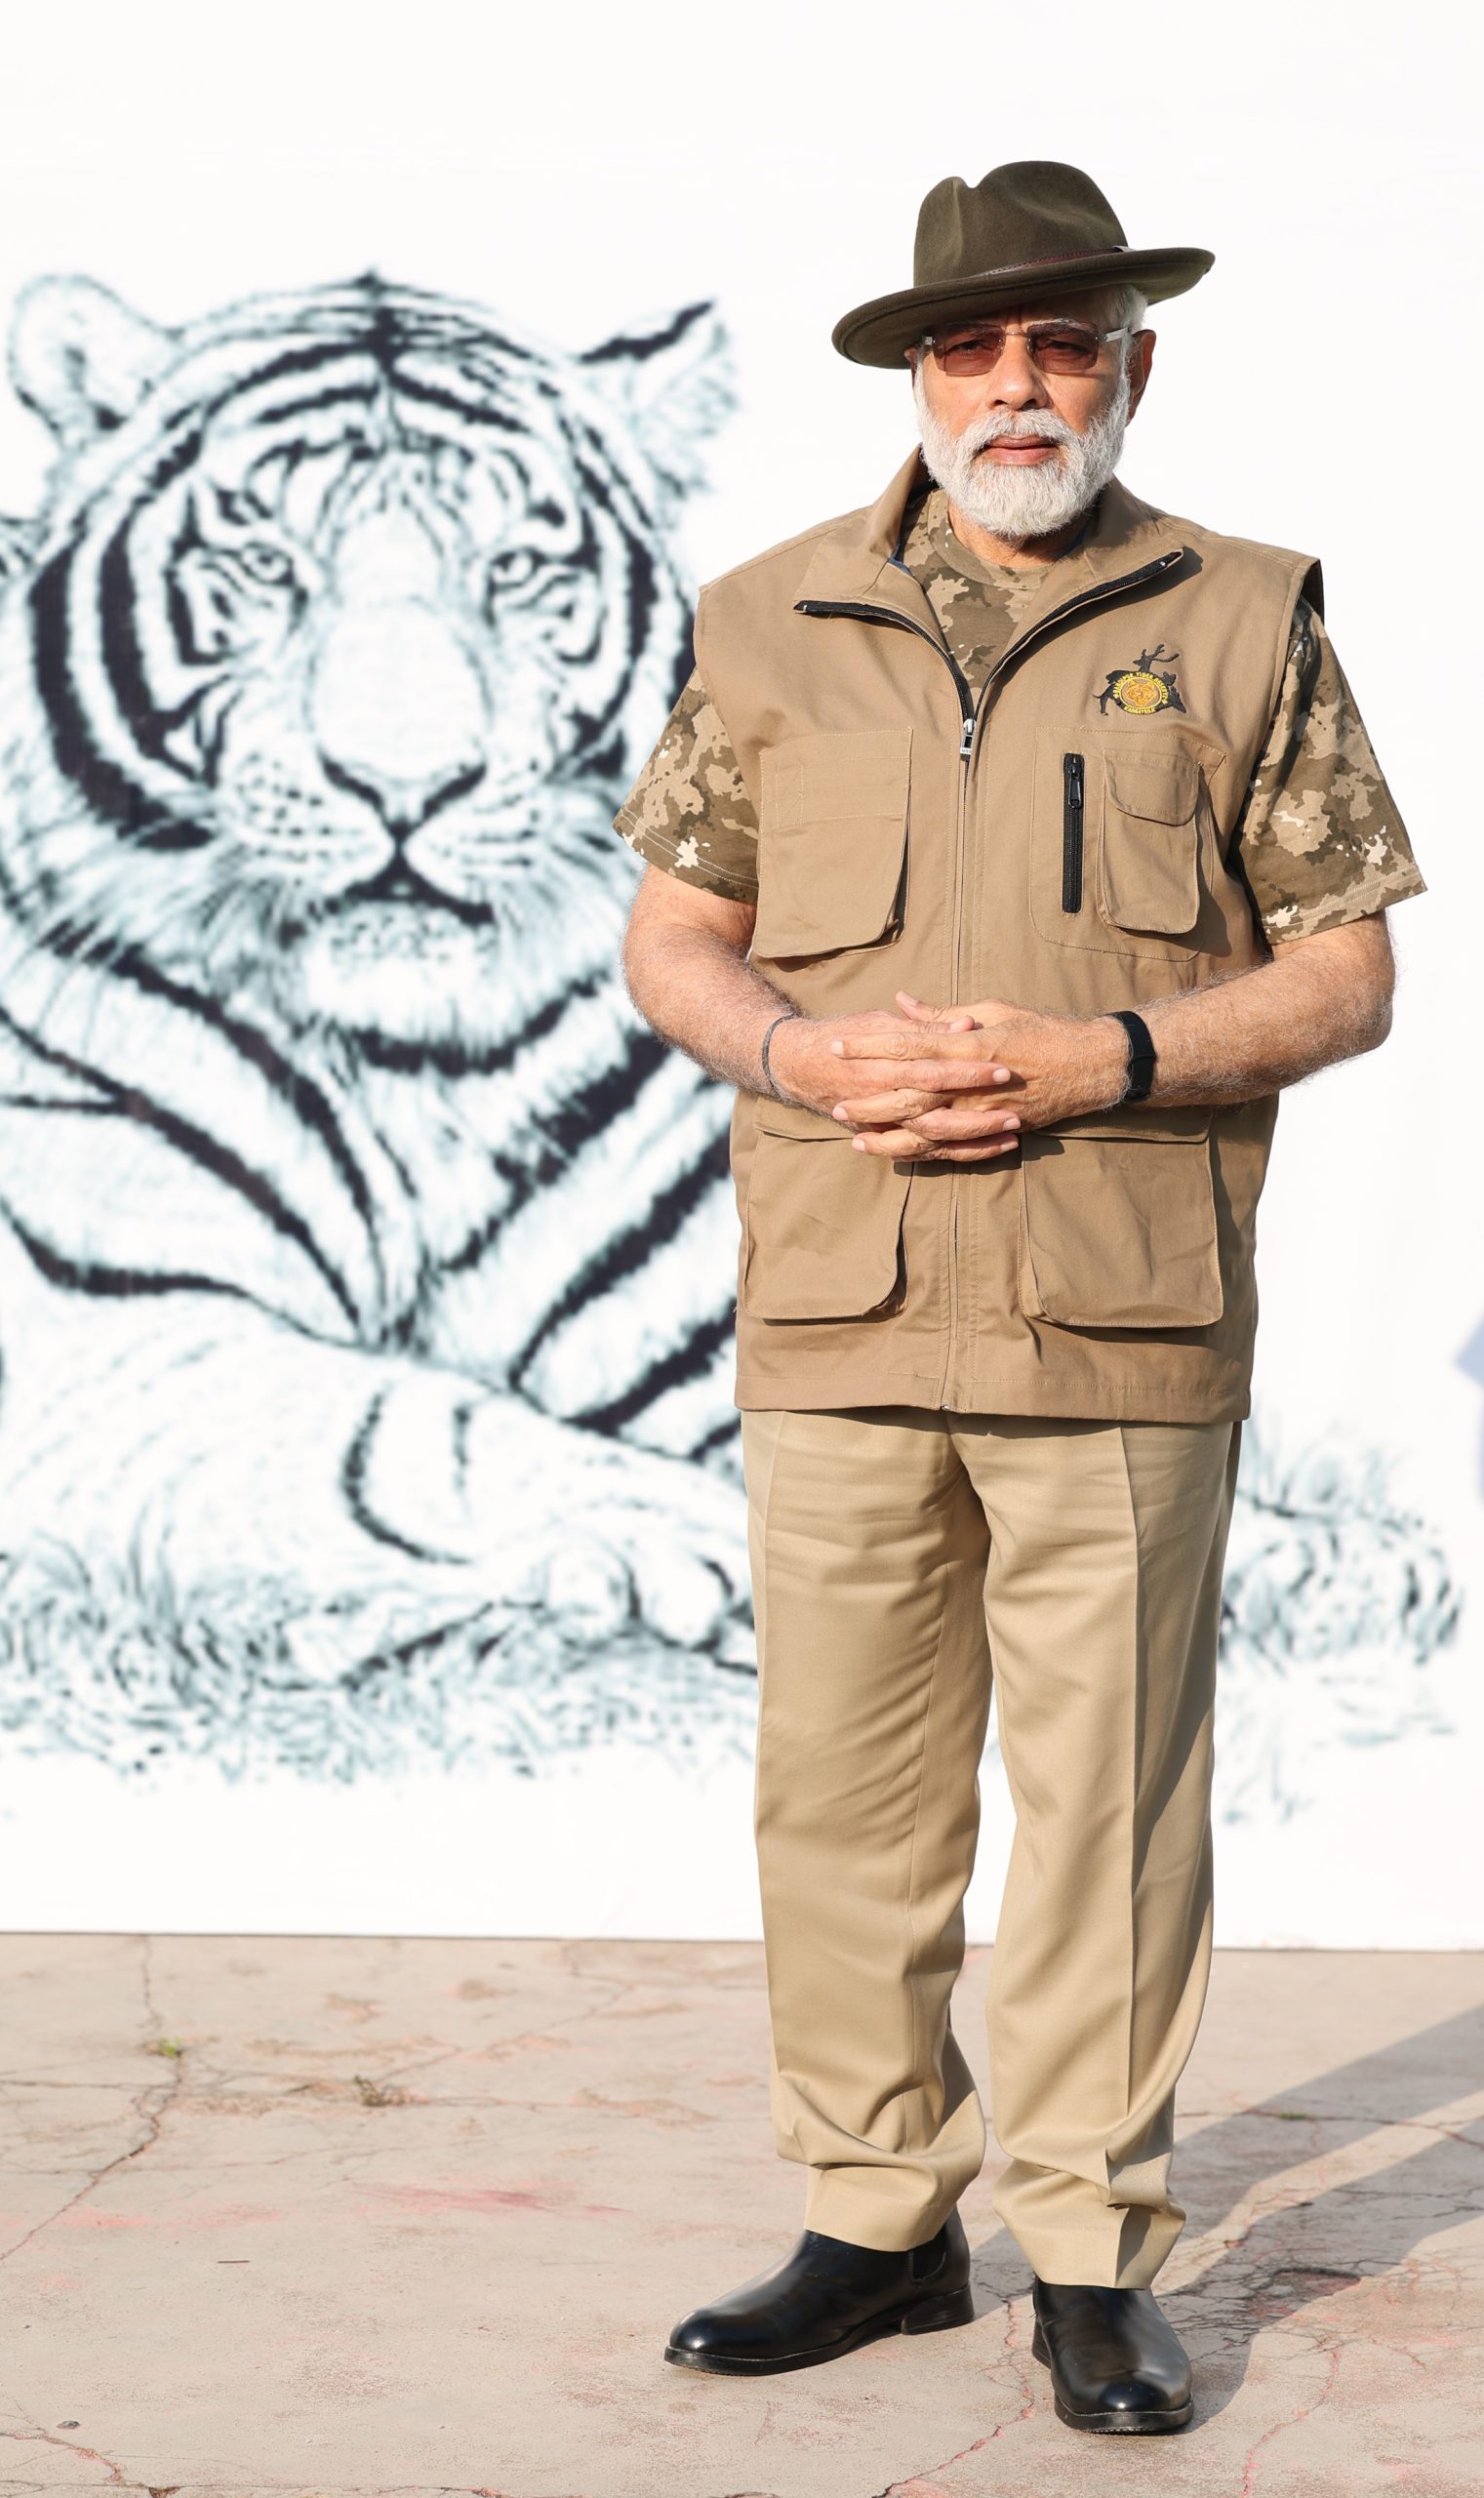 PM visit to Bandipur and Mudumalai Tiger Reserves, in Karnataka on April 9, 2023.